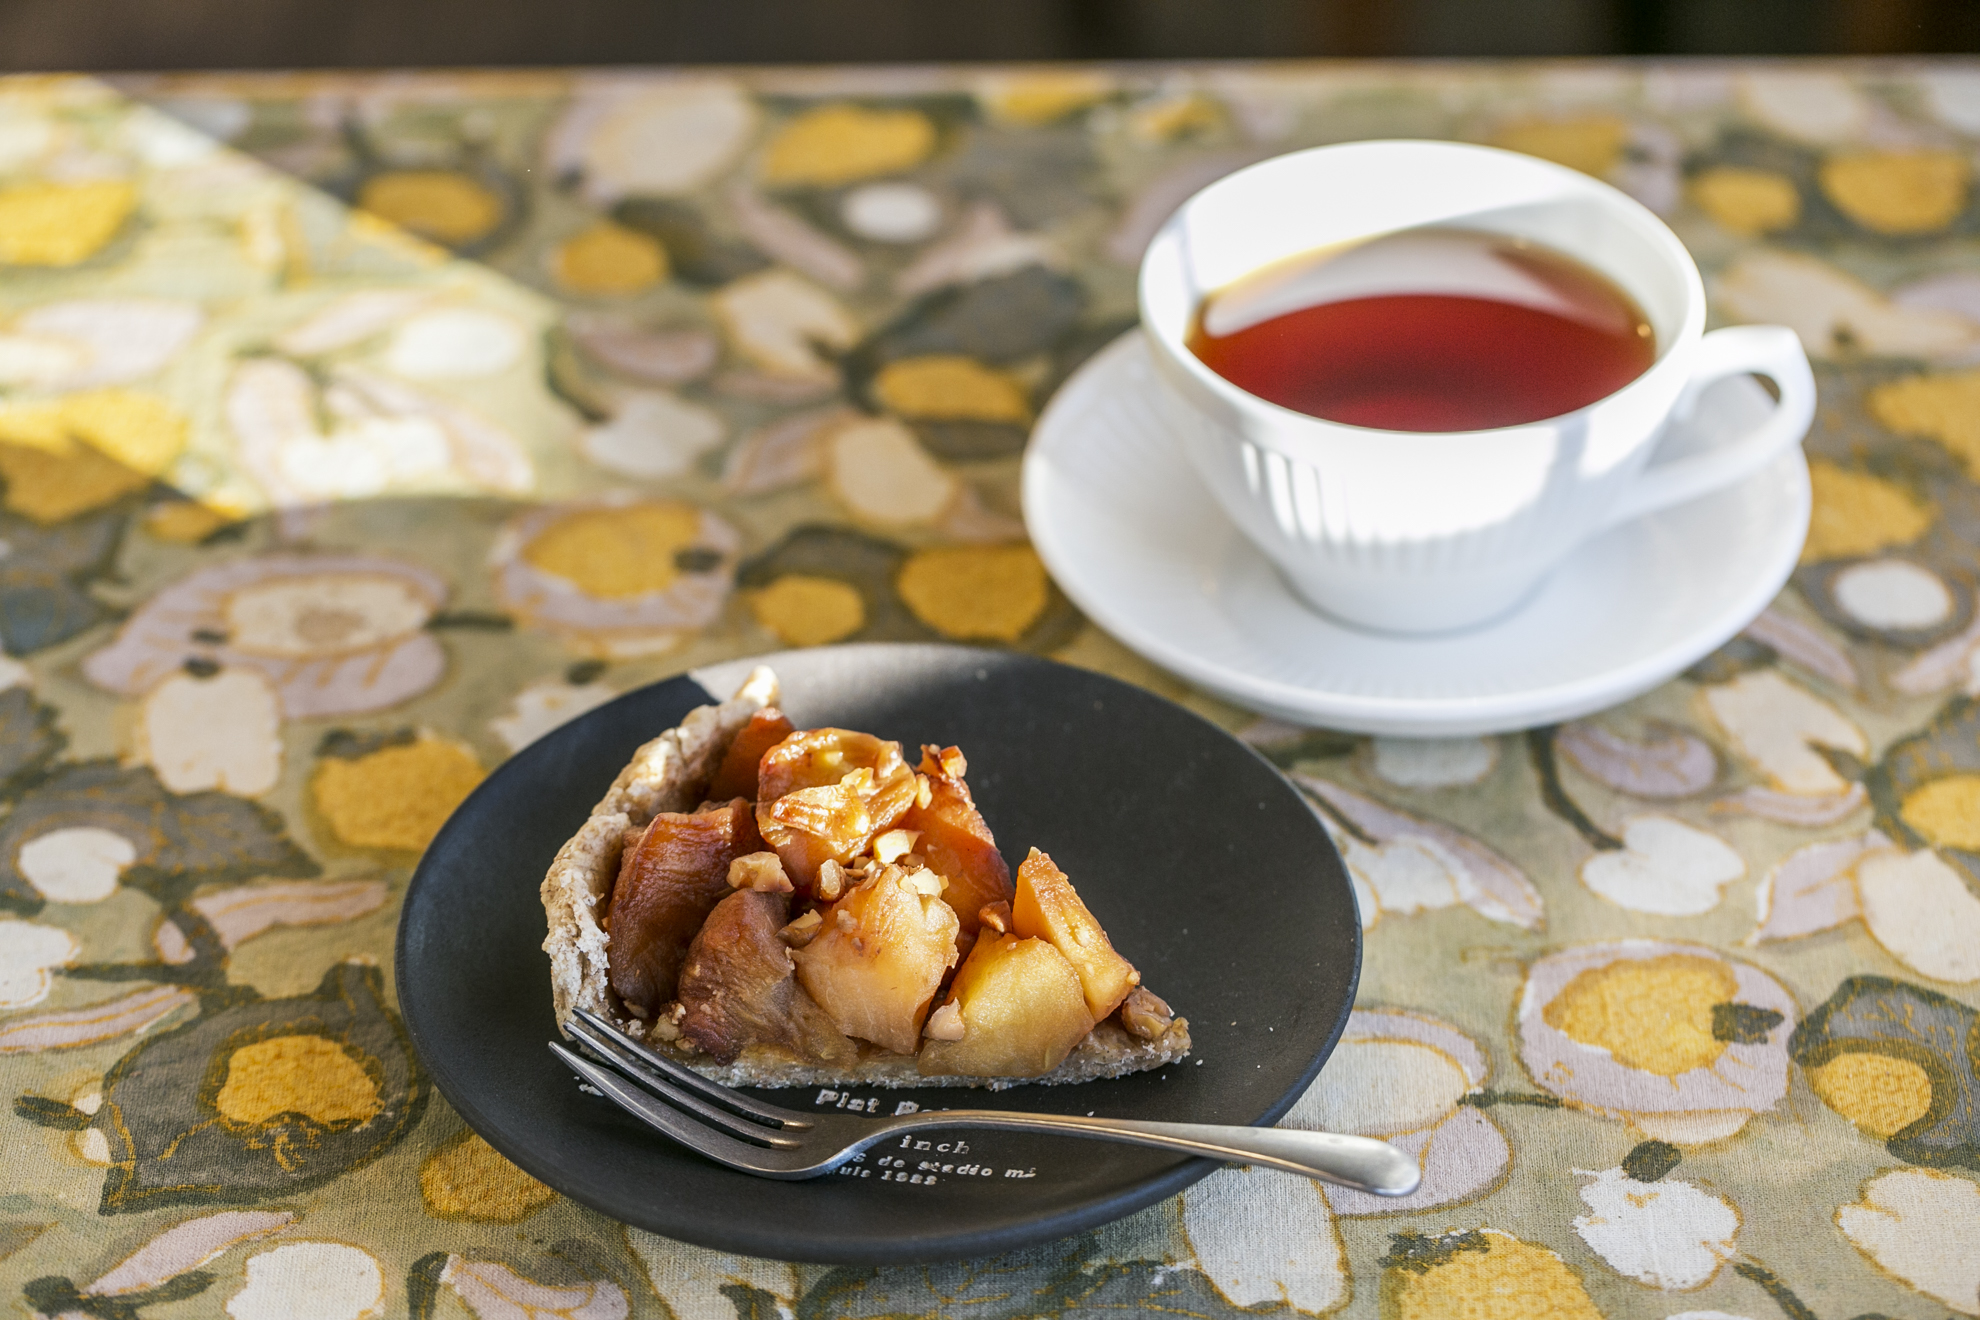 砂糖、卵、乳製品を一切使用していないアップルパイは紅茶とセットで900円